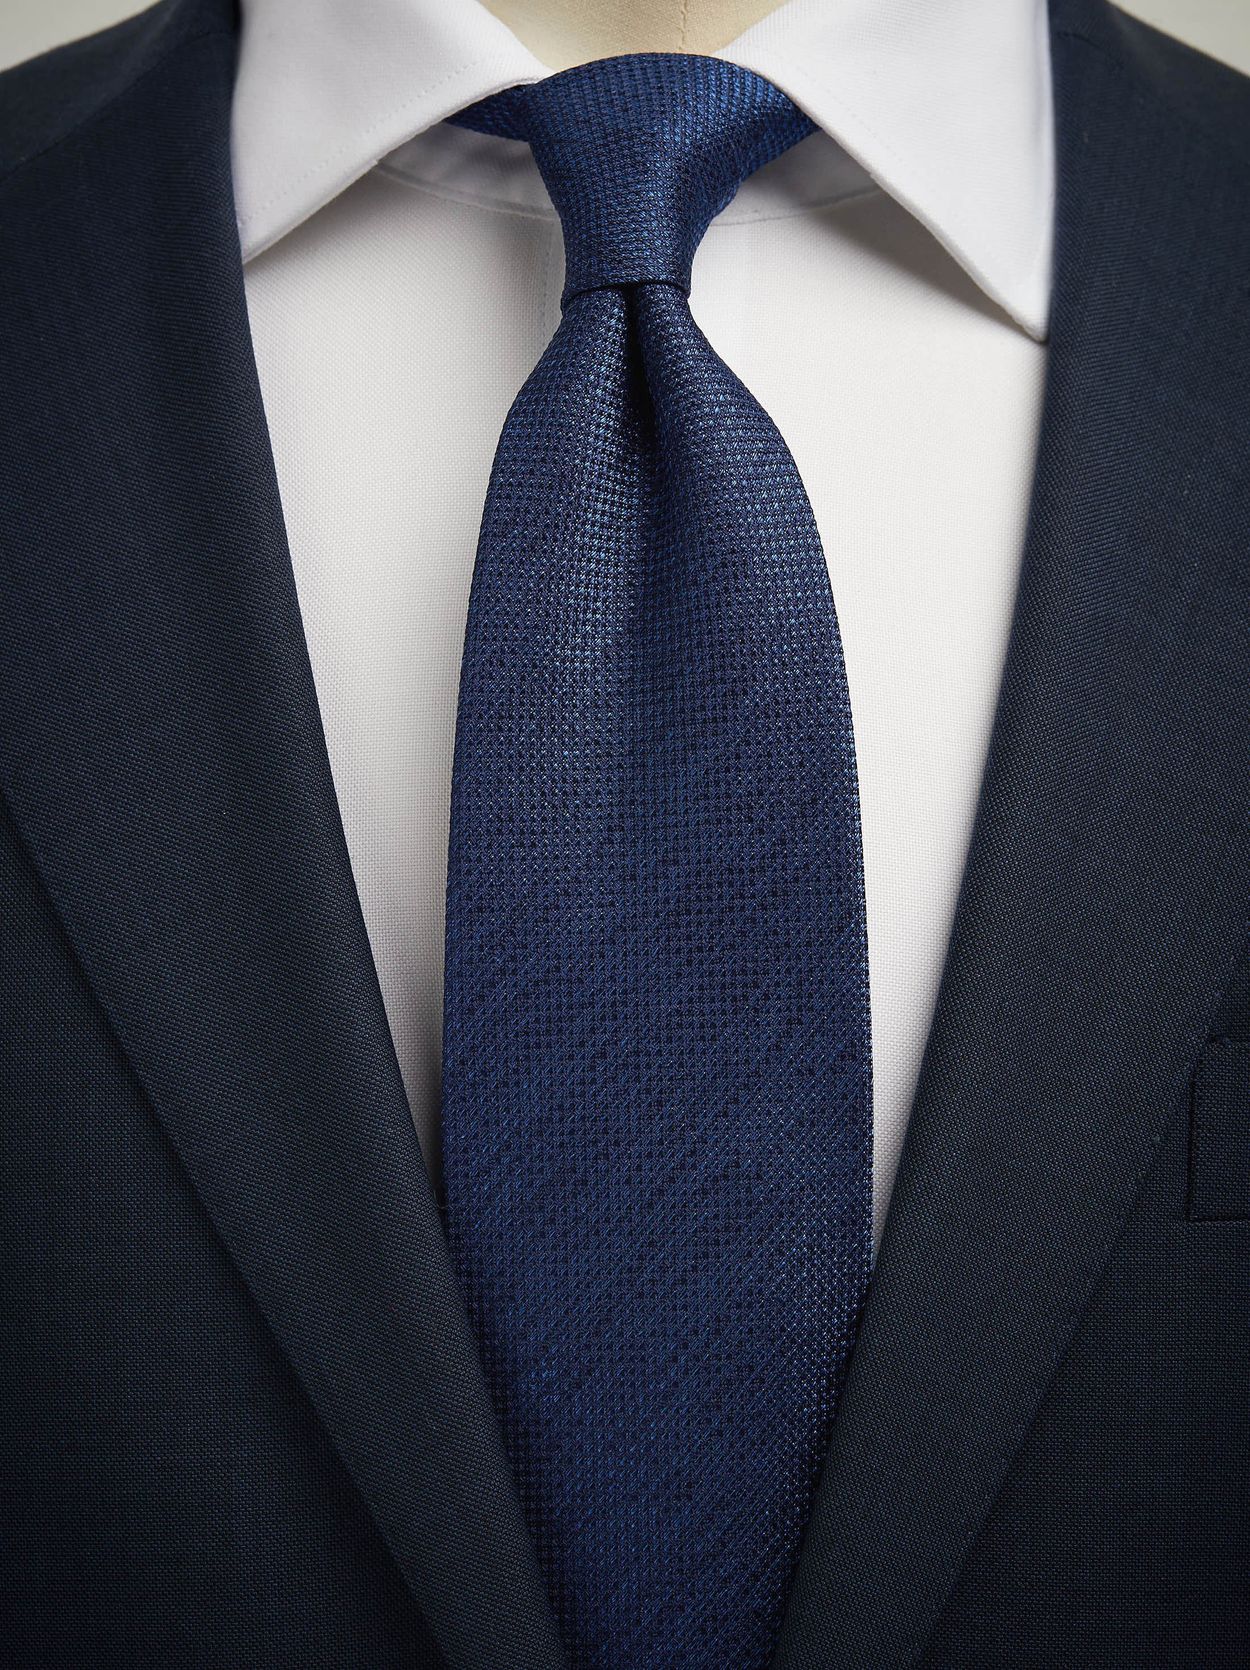 Krawatte mit Blauen Punkten